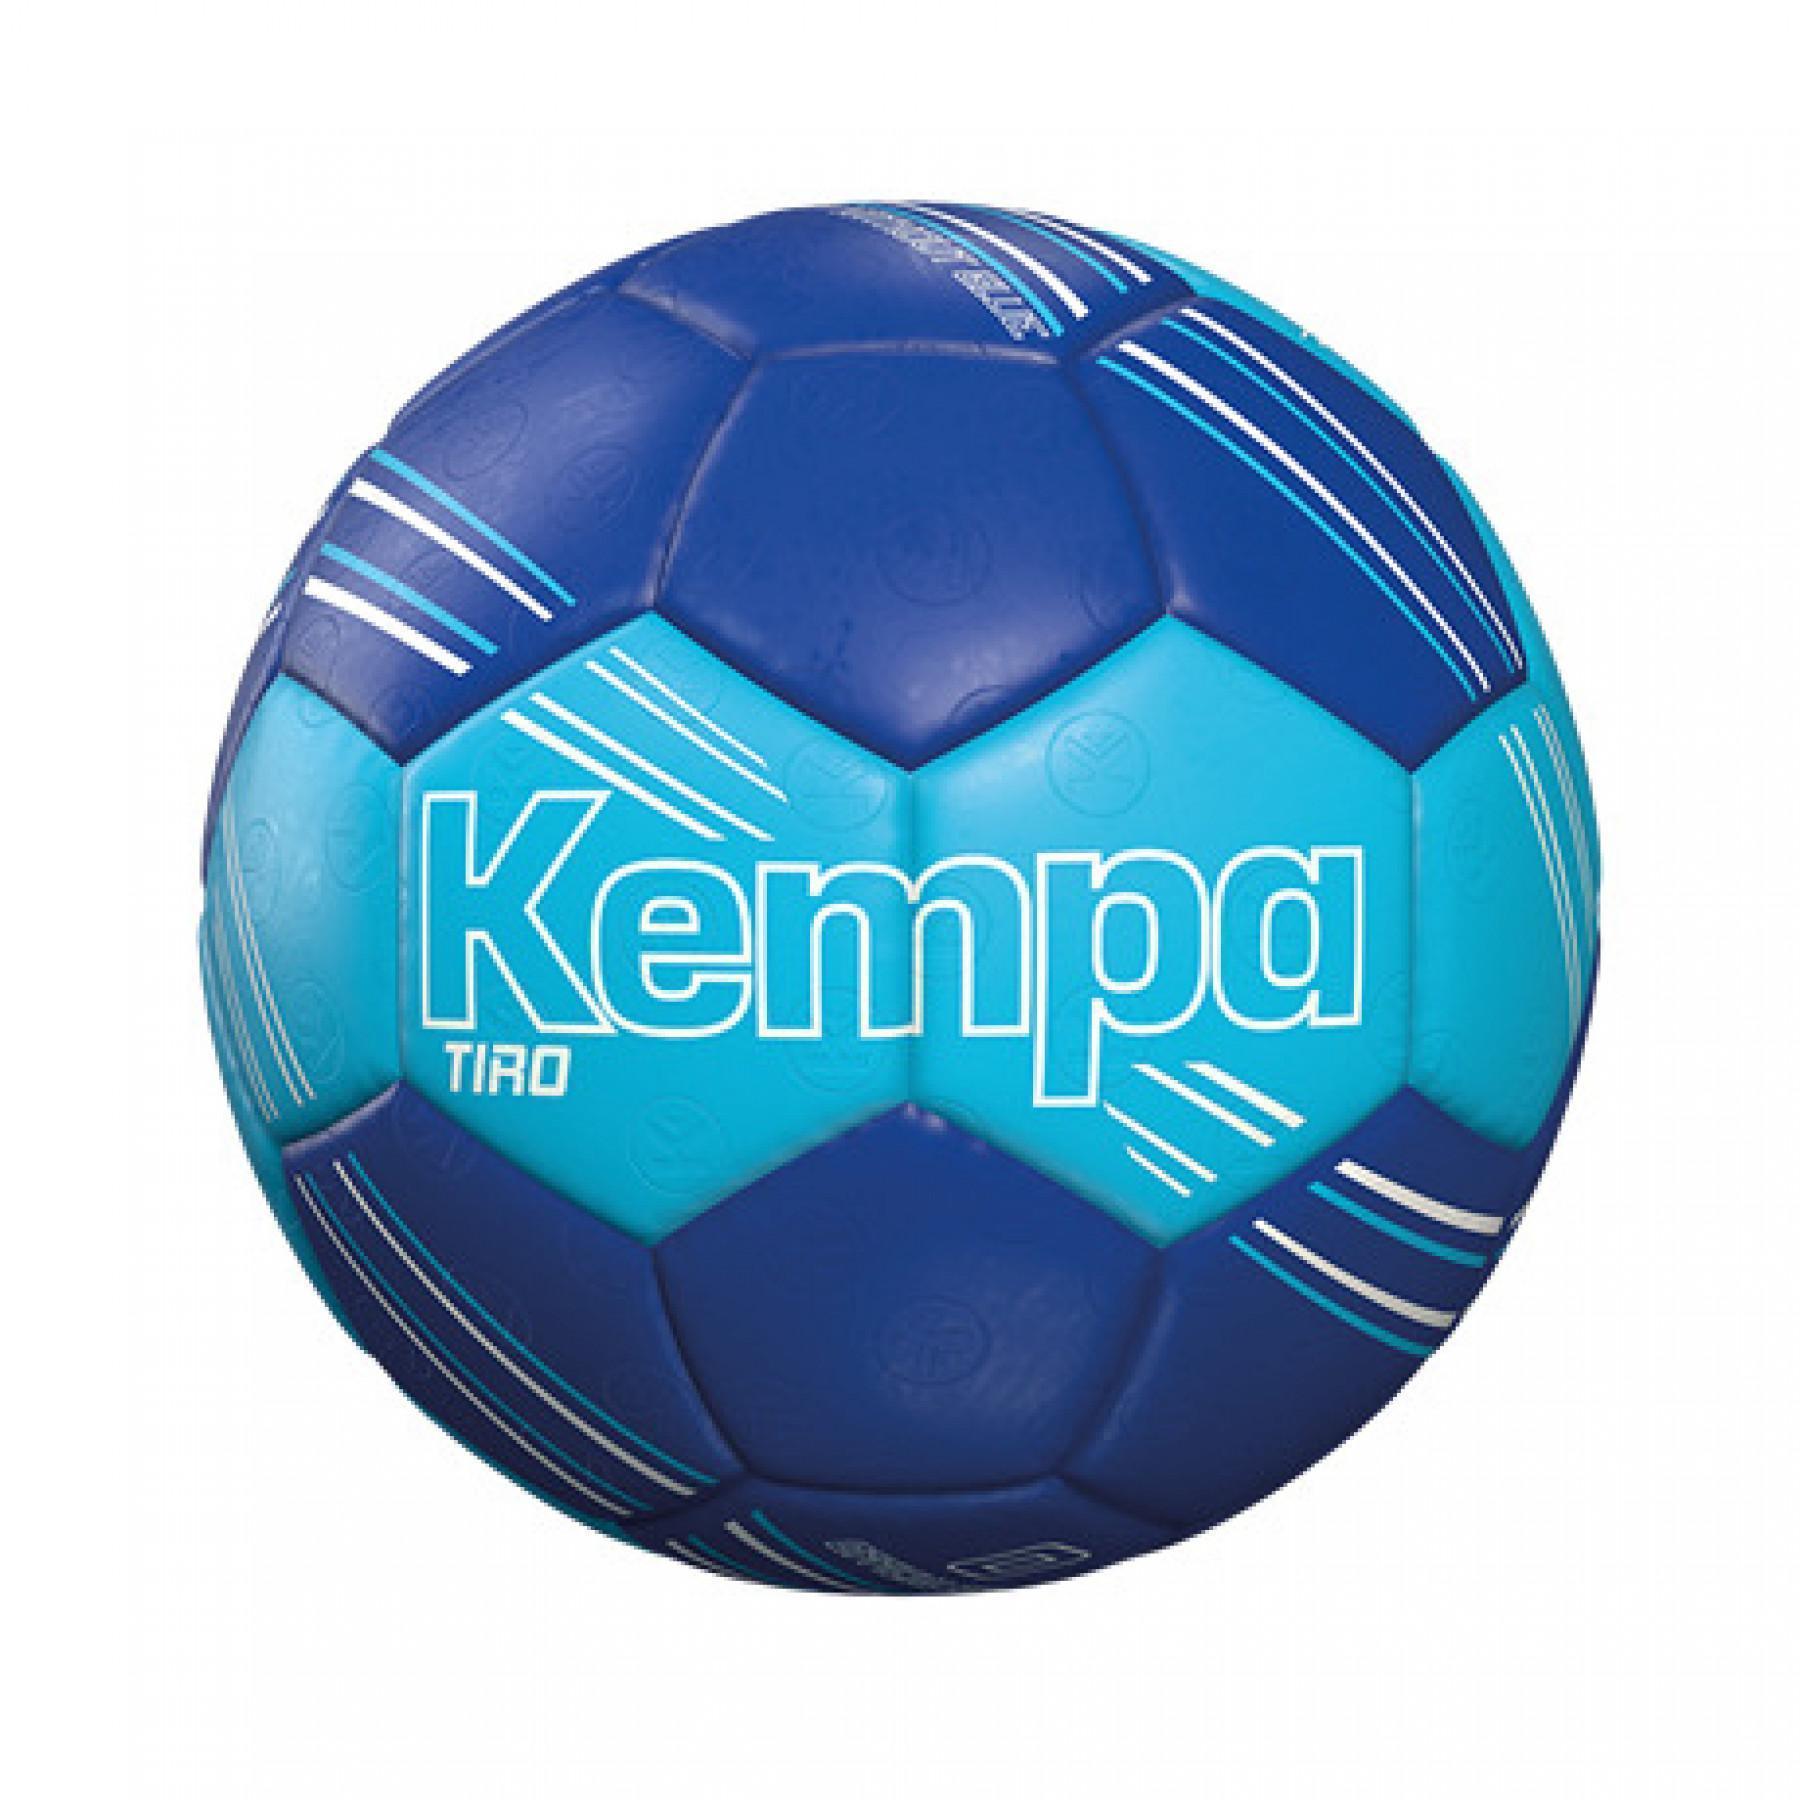 Ballon Kempa Tiro